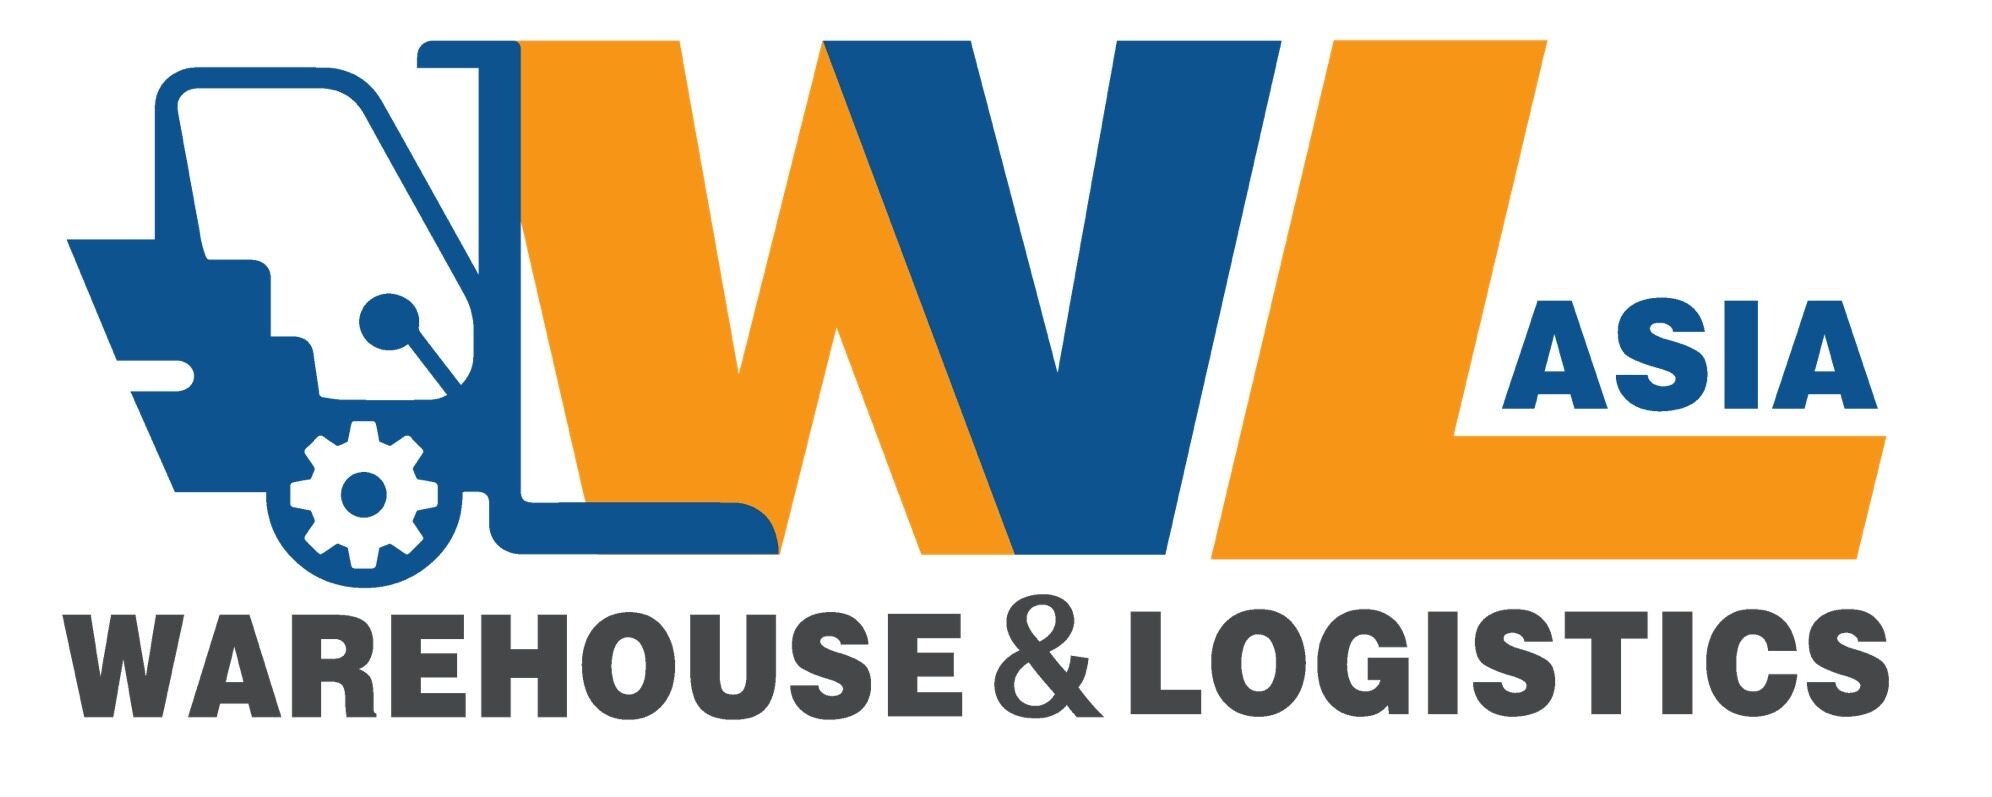 Warehouse & Logistics Asia